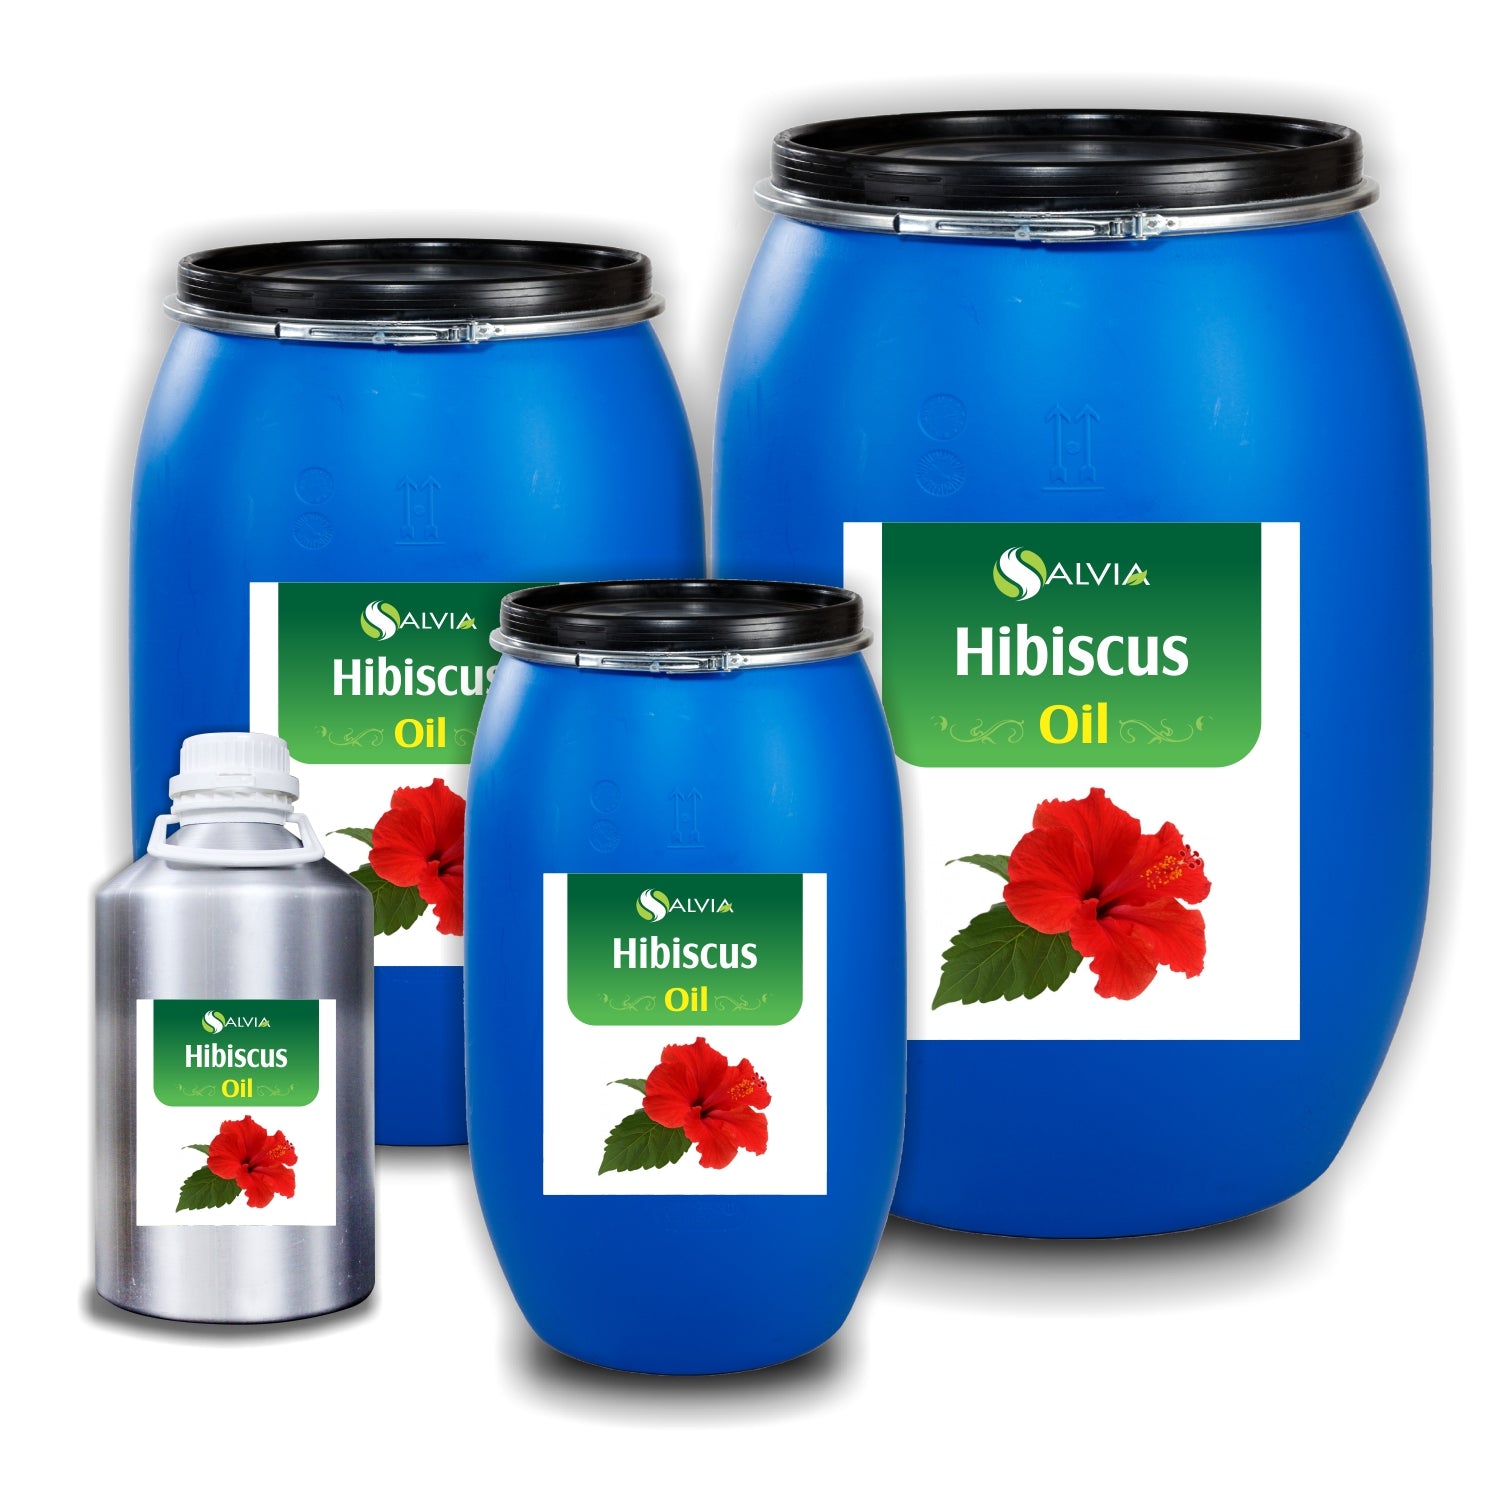 Salvia Natural Essential Oils 5000ml Hibiscus Essential Oil